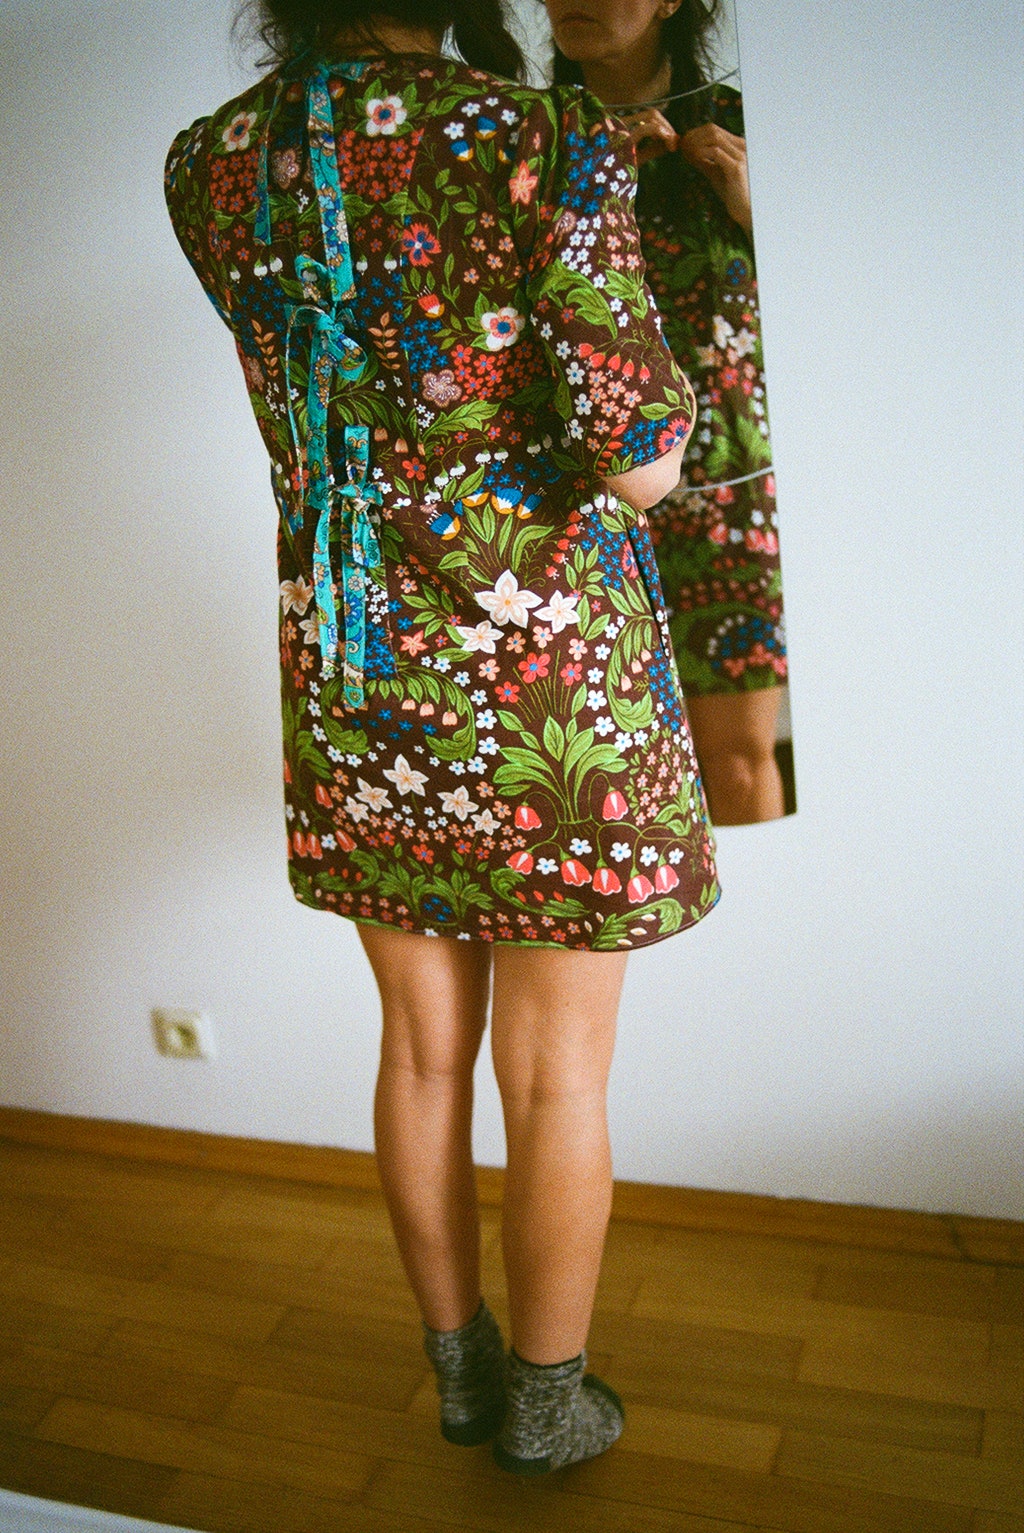 Платье из капсульной коллекции Наталии Туровниковой цена по запросу nturovnikovadress